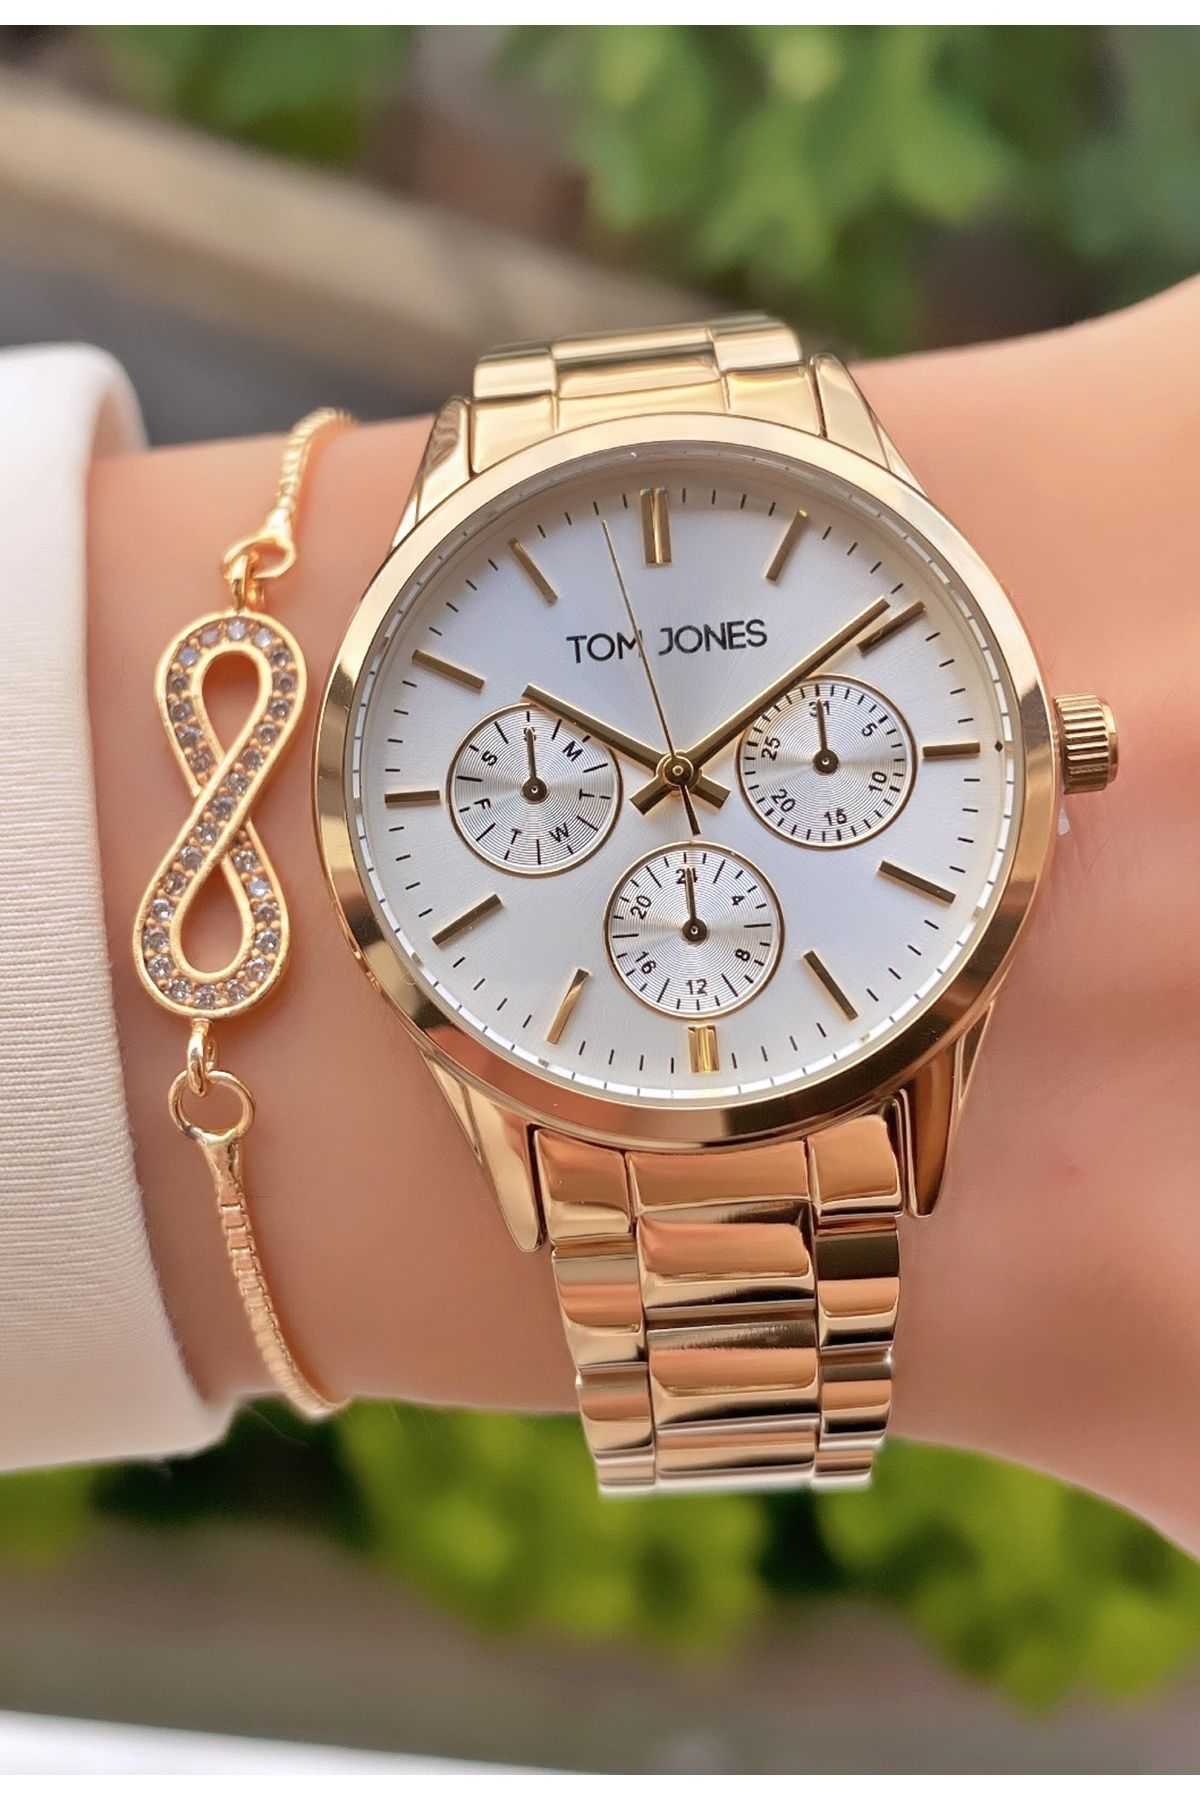 Tom Jones Marka Altın Renk 2 Yıl Garantili Kadın Kol Saati - Bileklik Hediyeli